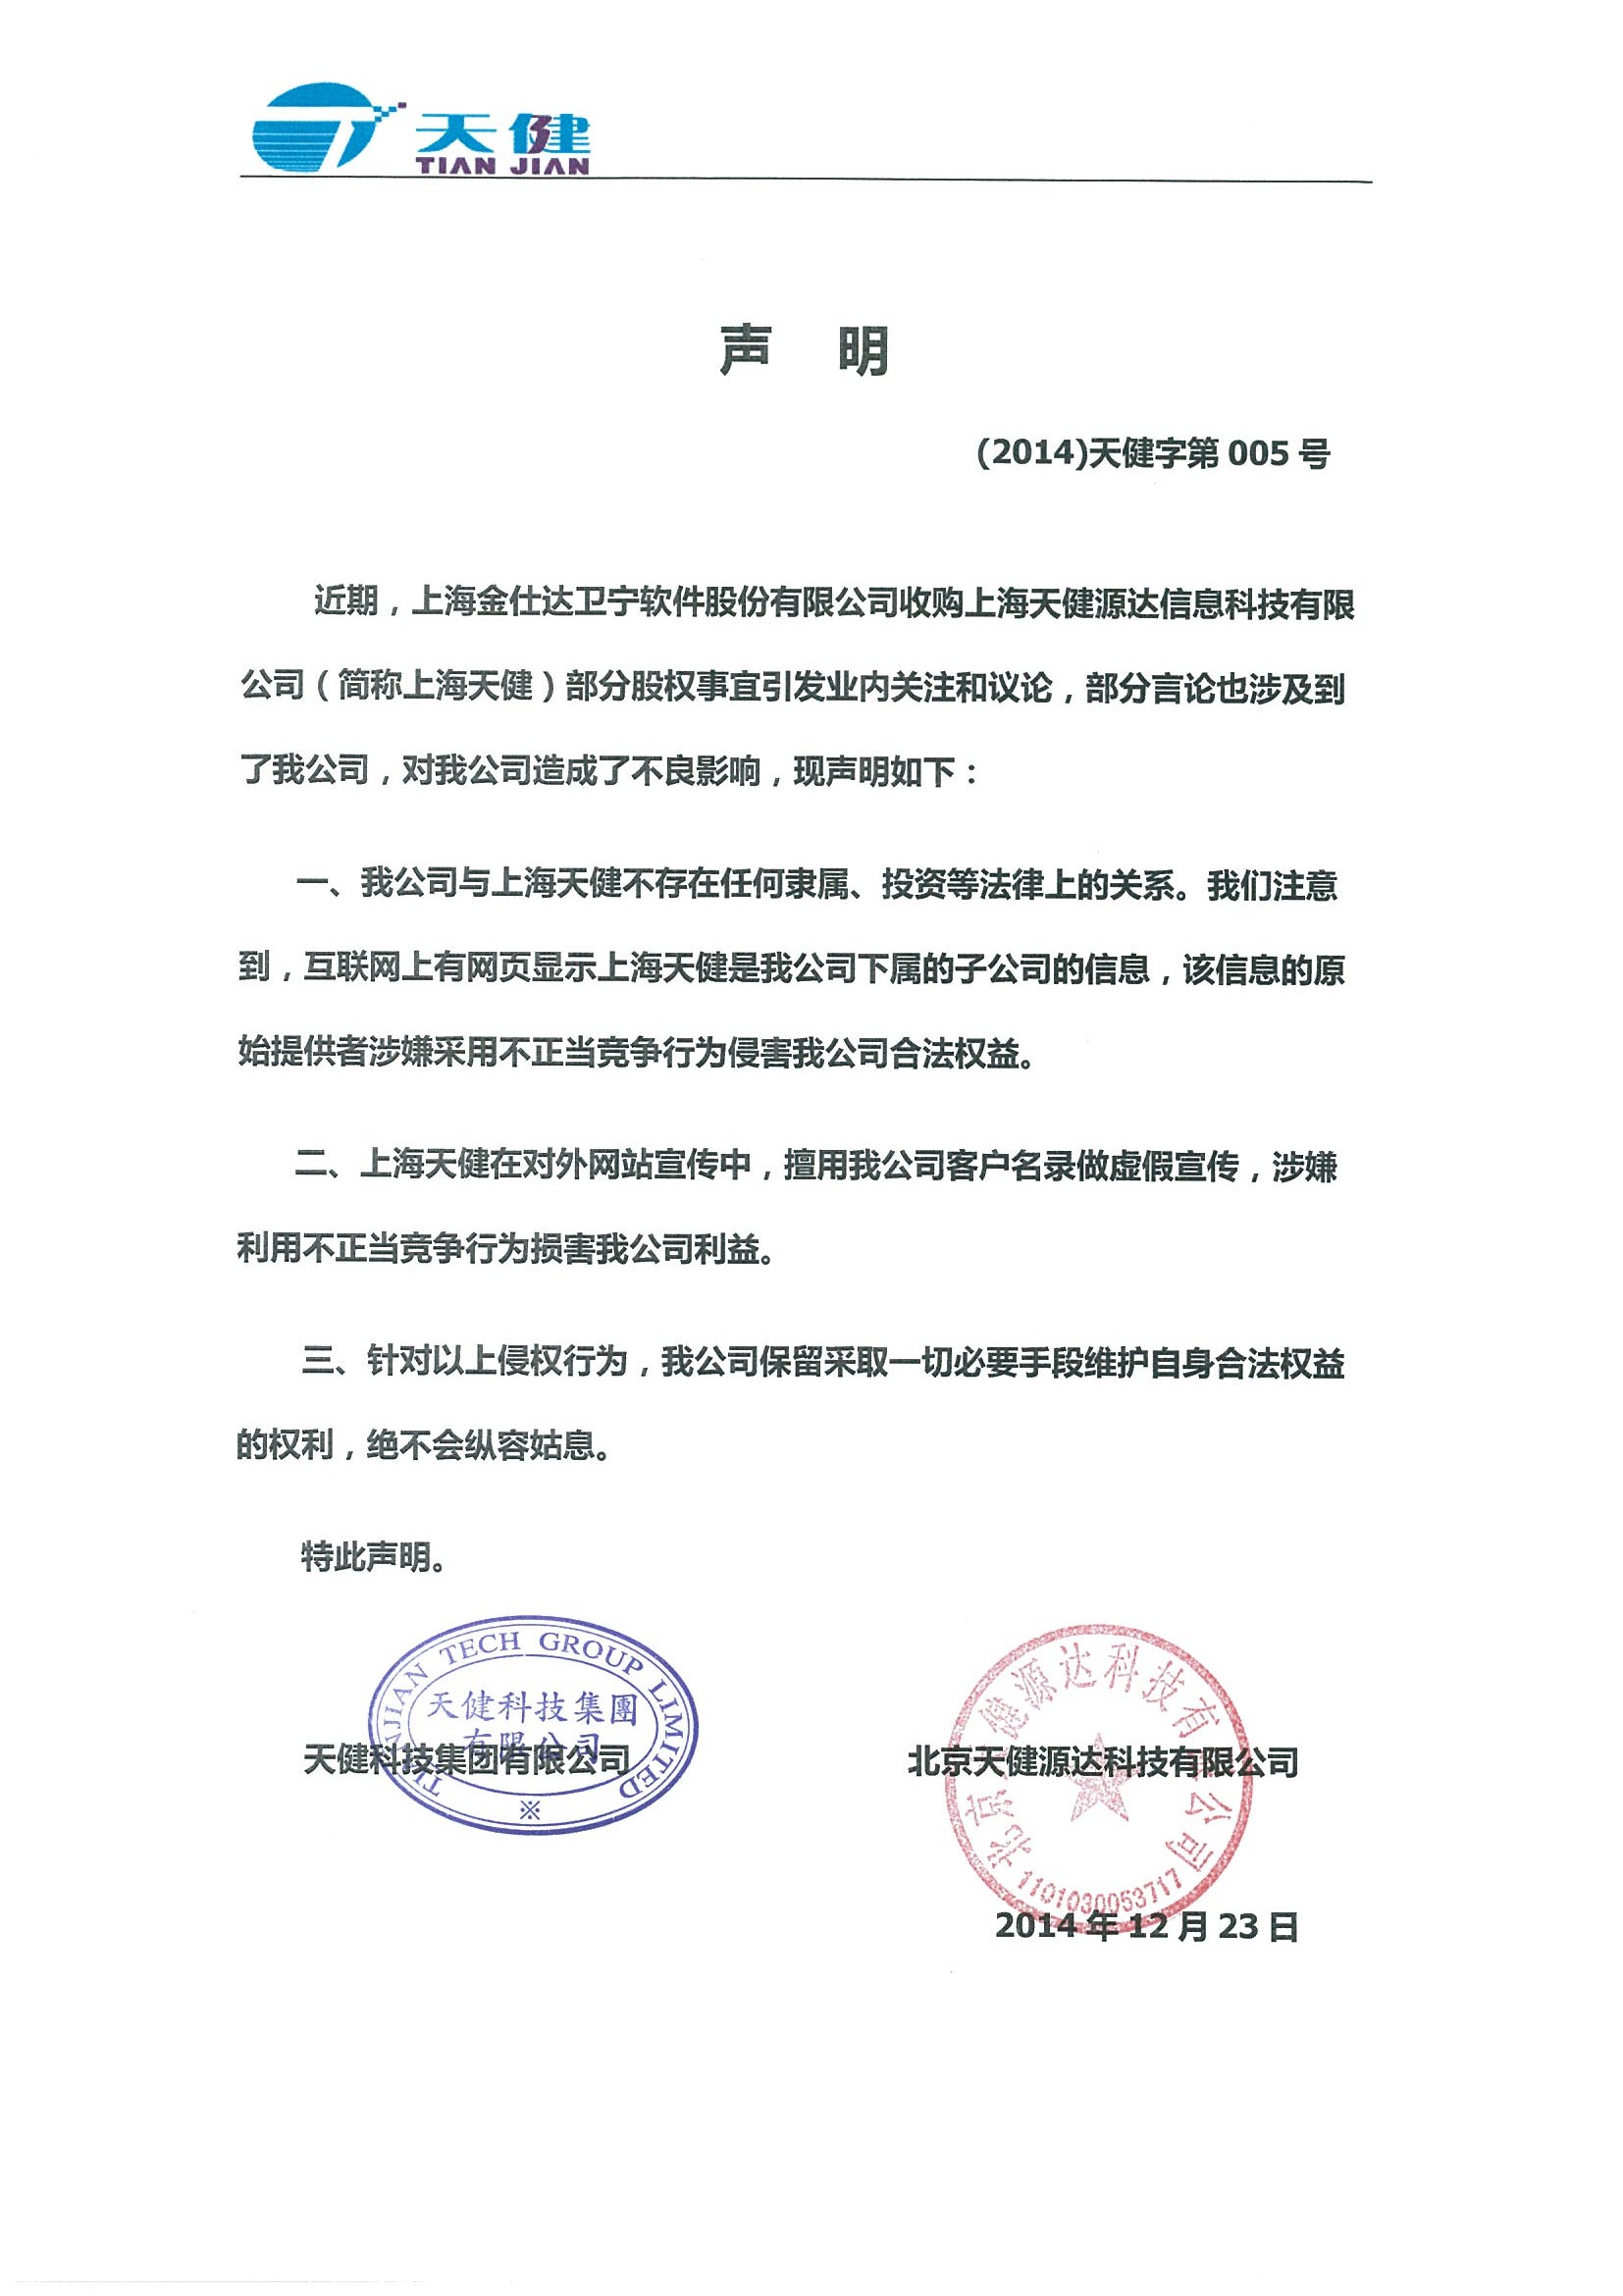 北京天健源达科技有限公司发布声明函 - HC3i中国数字医疗网